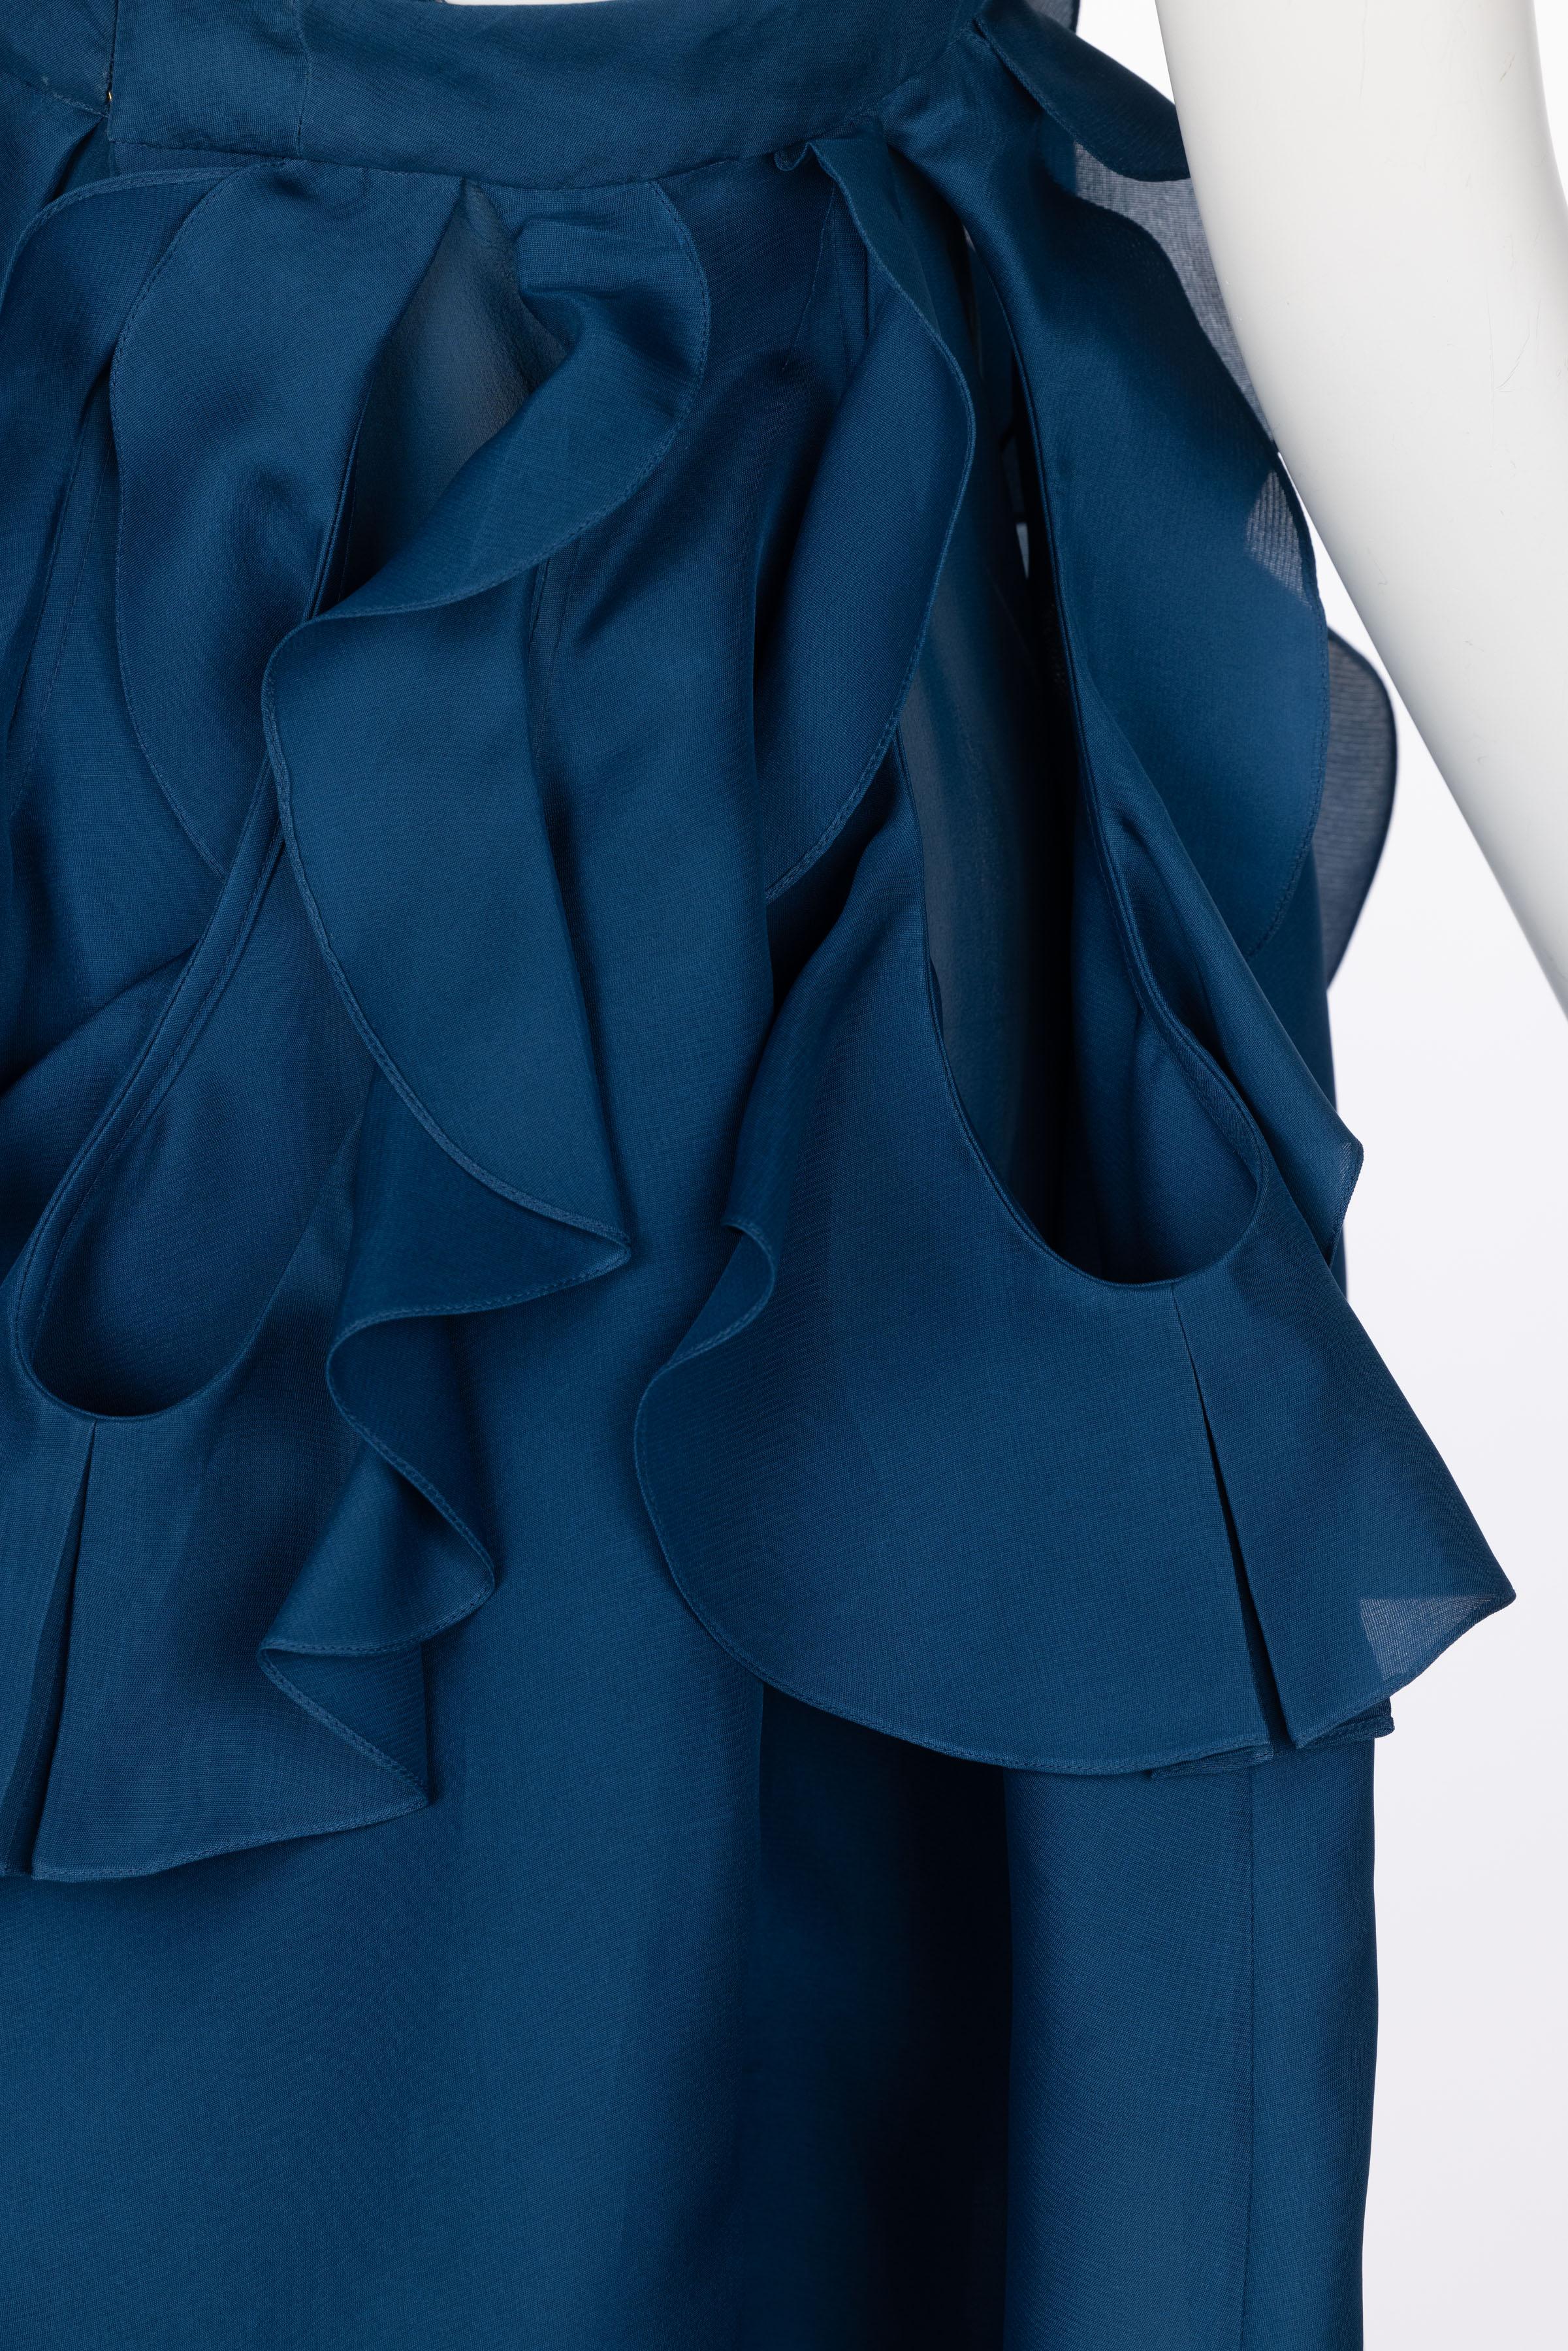 Yves Saint Laurent - Robe de défilé en organza de soie bleu, printemps 2012 en vente 7